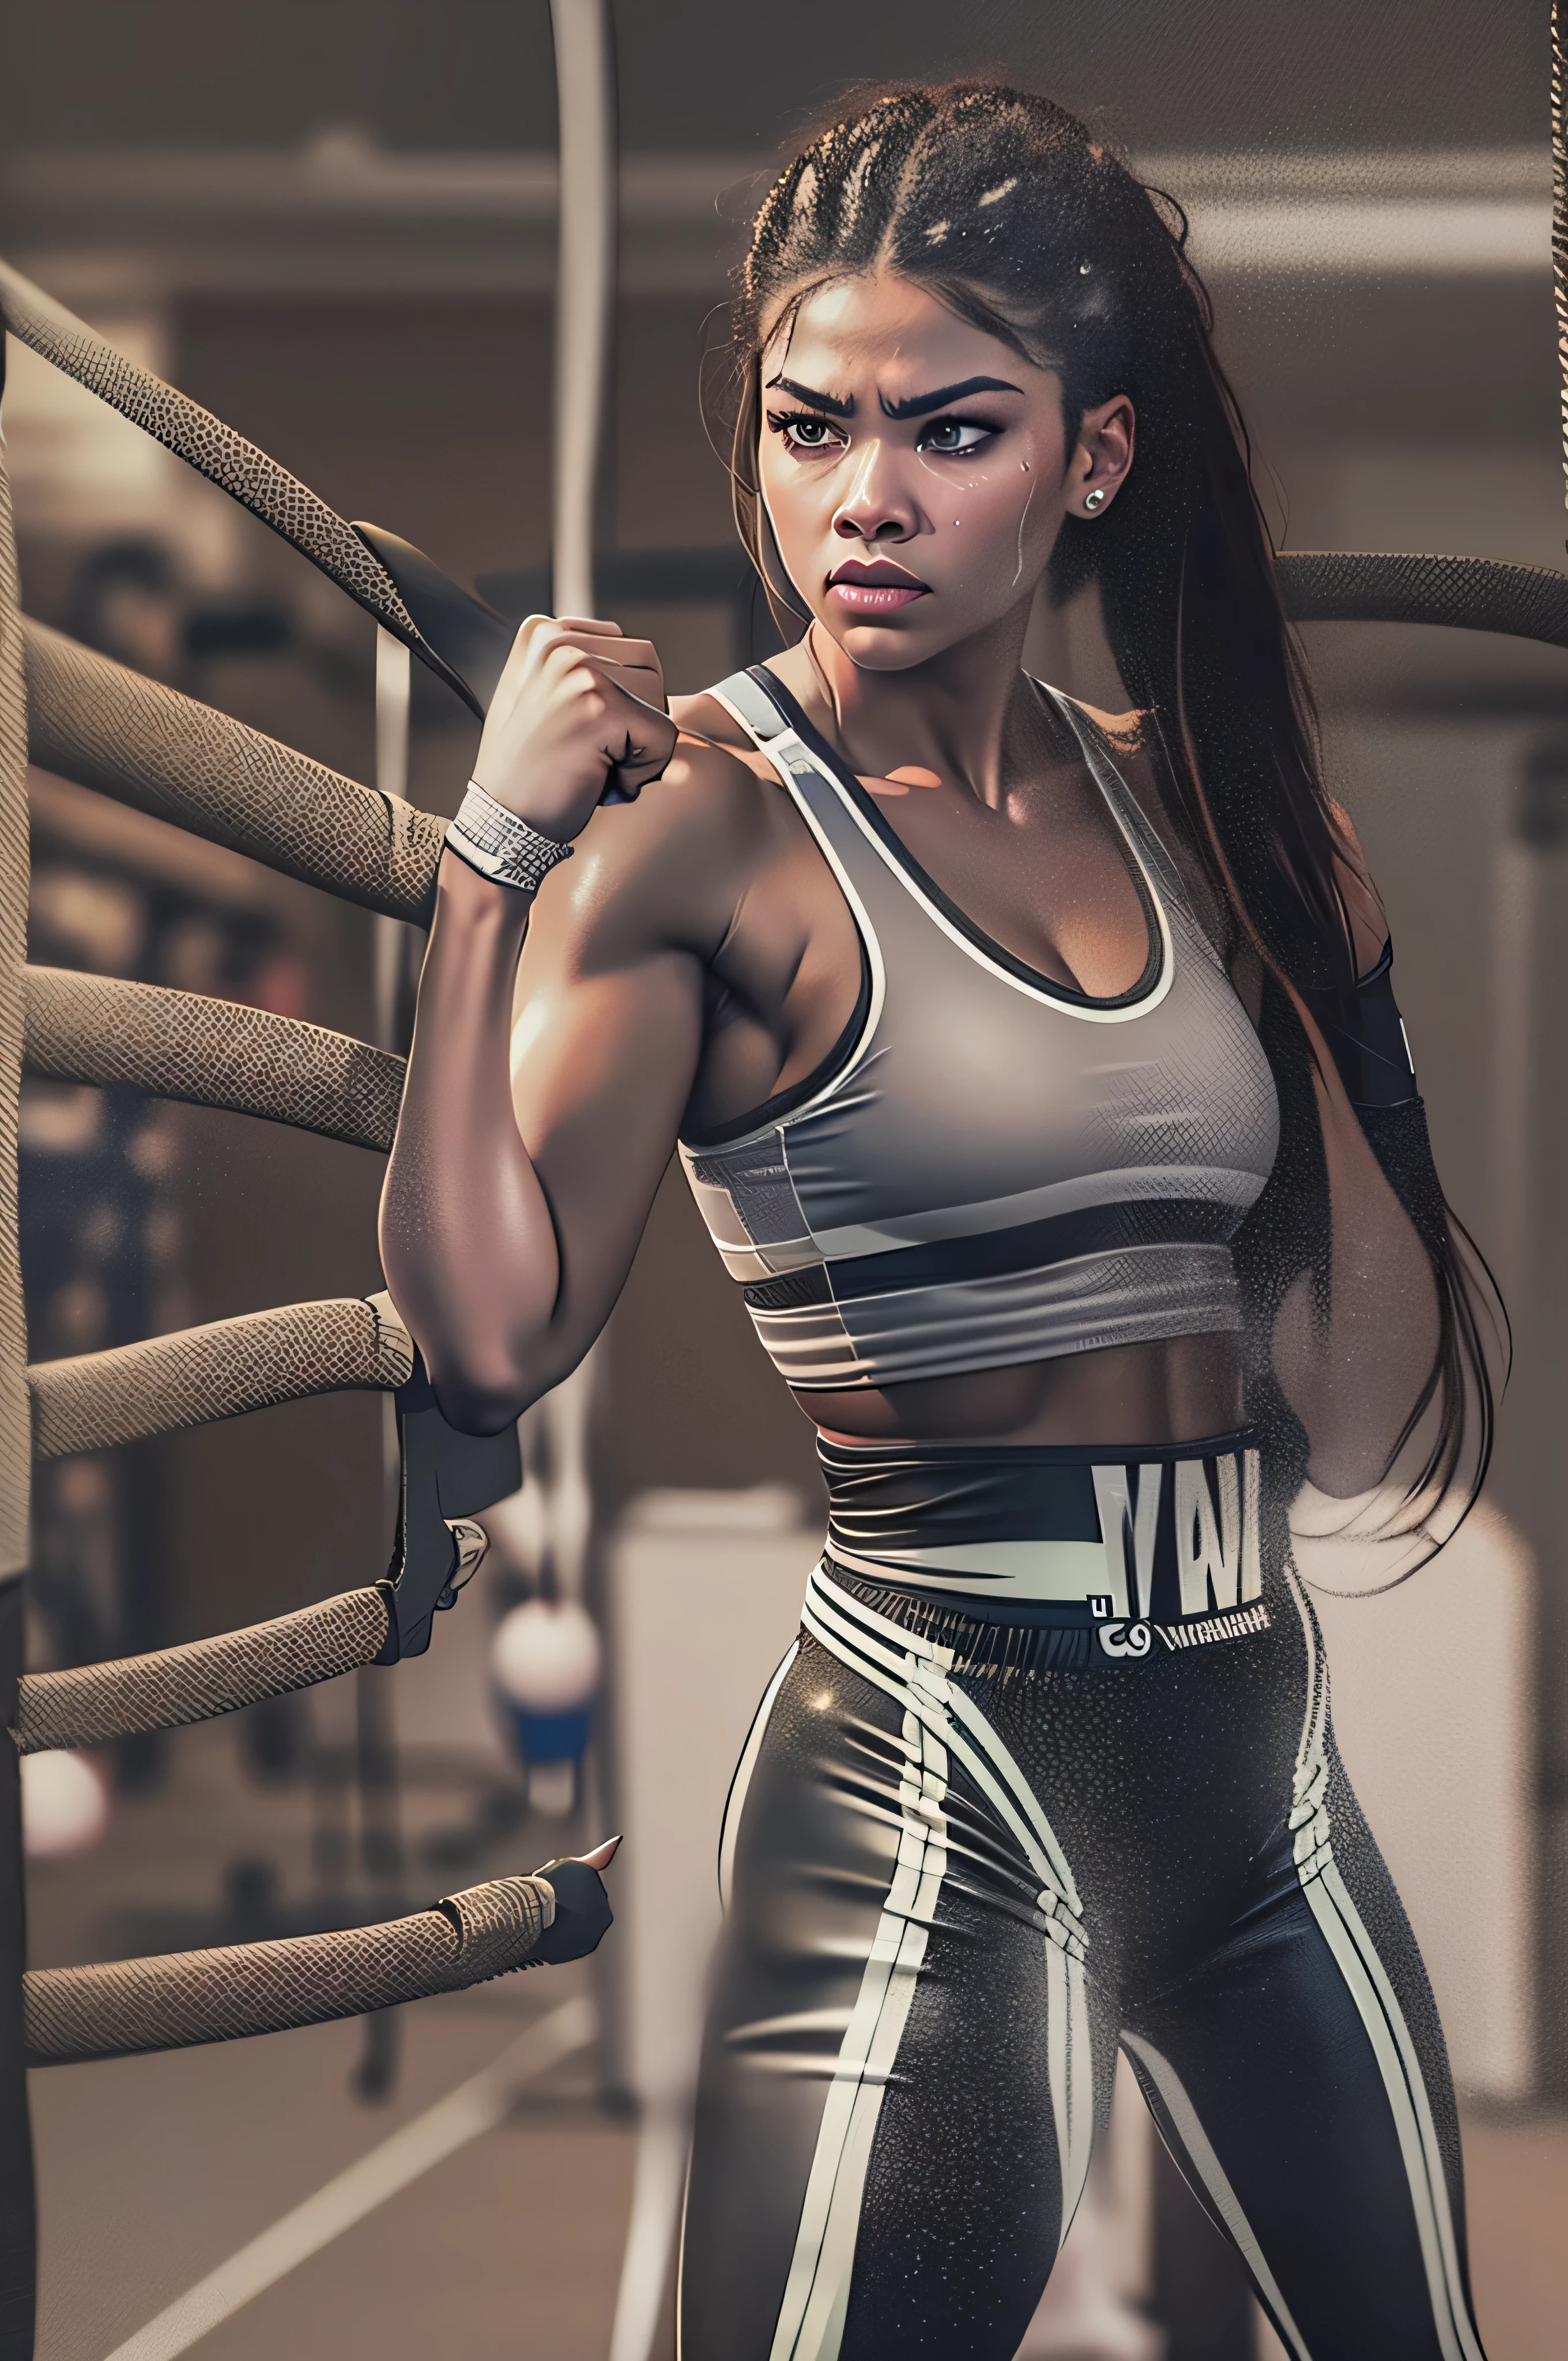 Zendaya Coleman,boxing gym,punching bag,sports bra,boxing shorts